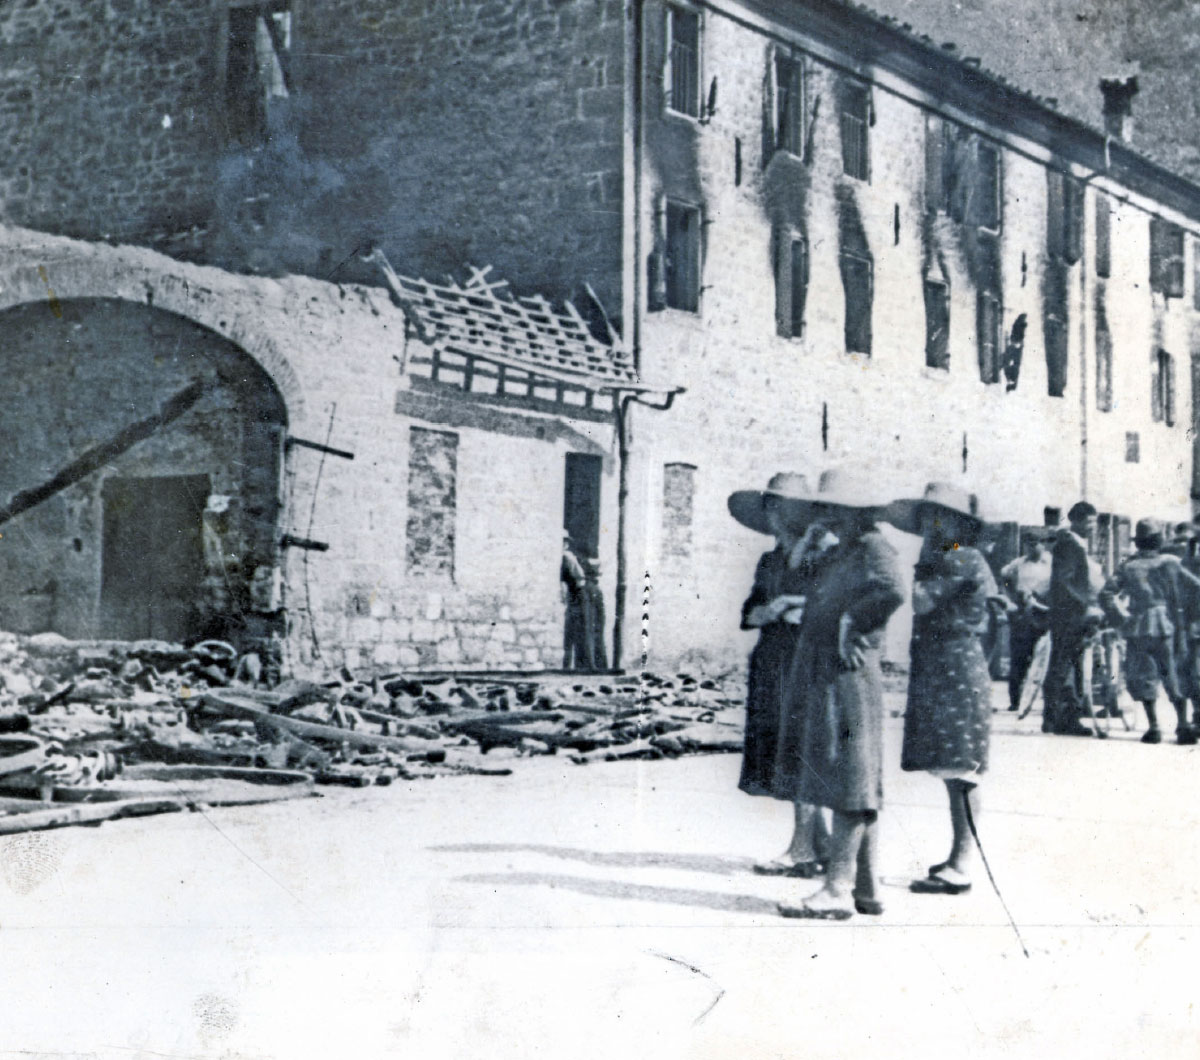 Bettola il mattino dopo l’incendio, 24 giugno 1944